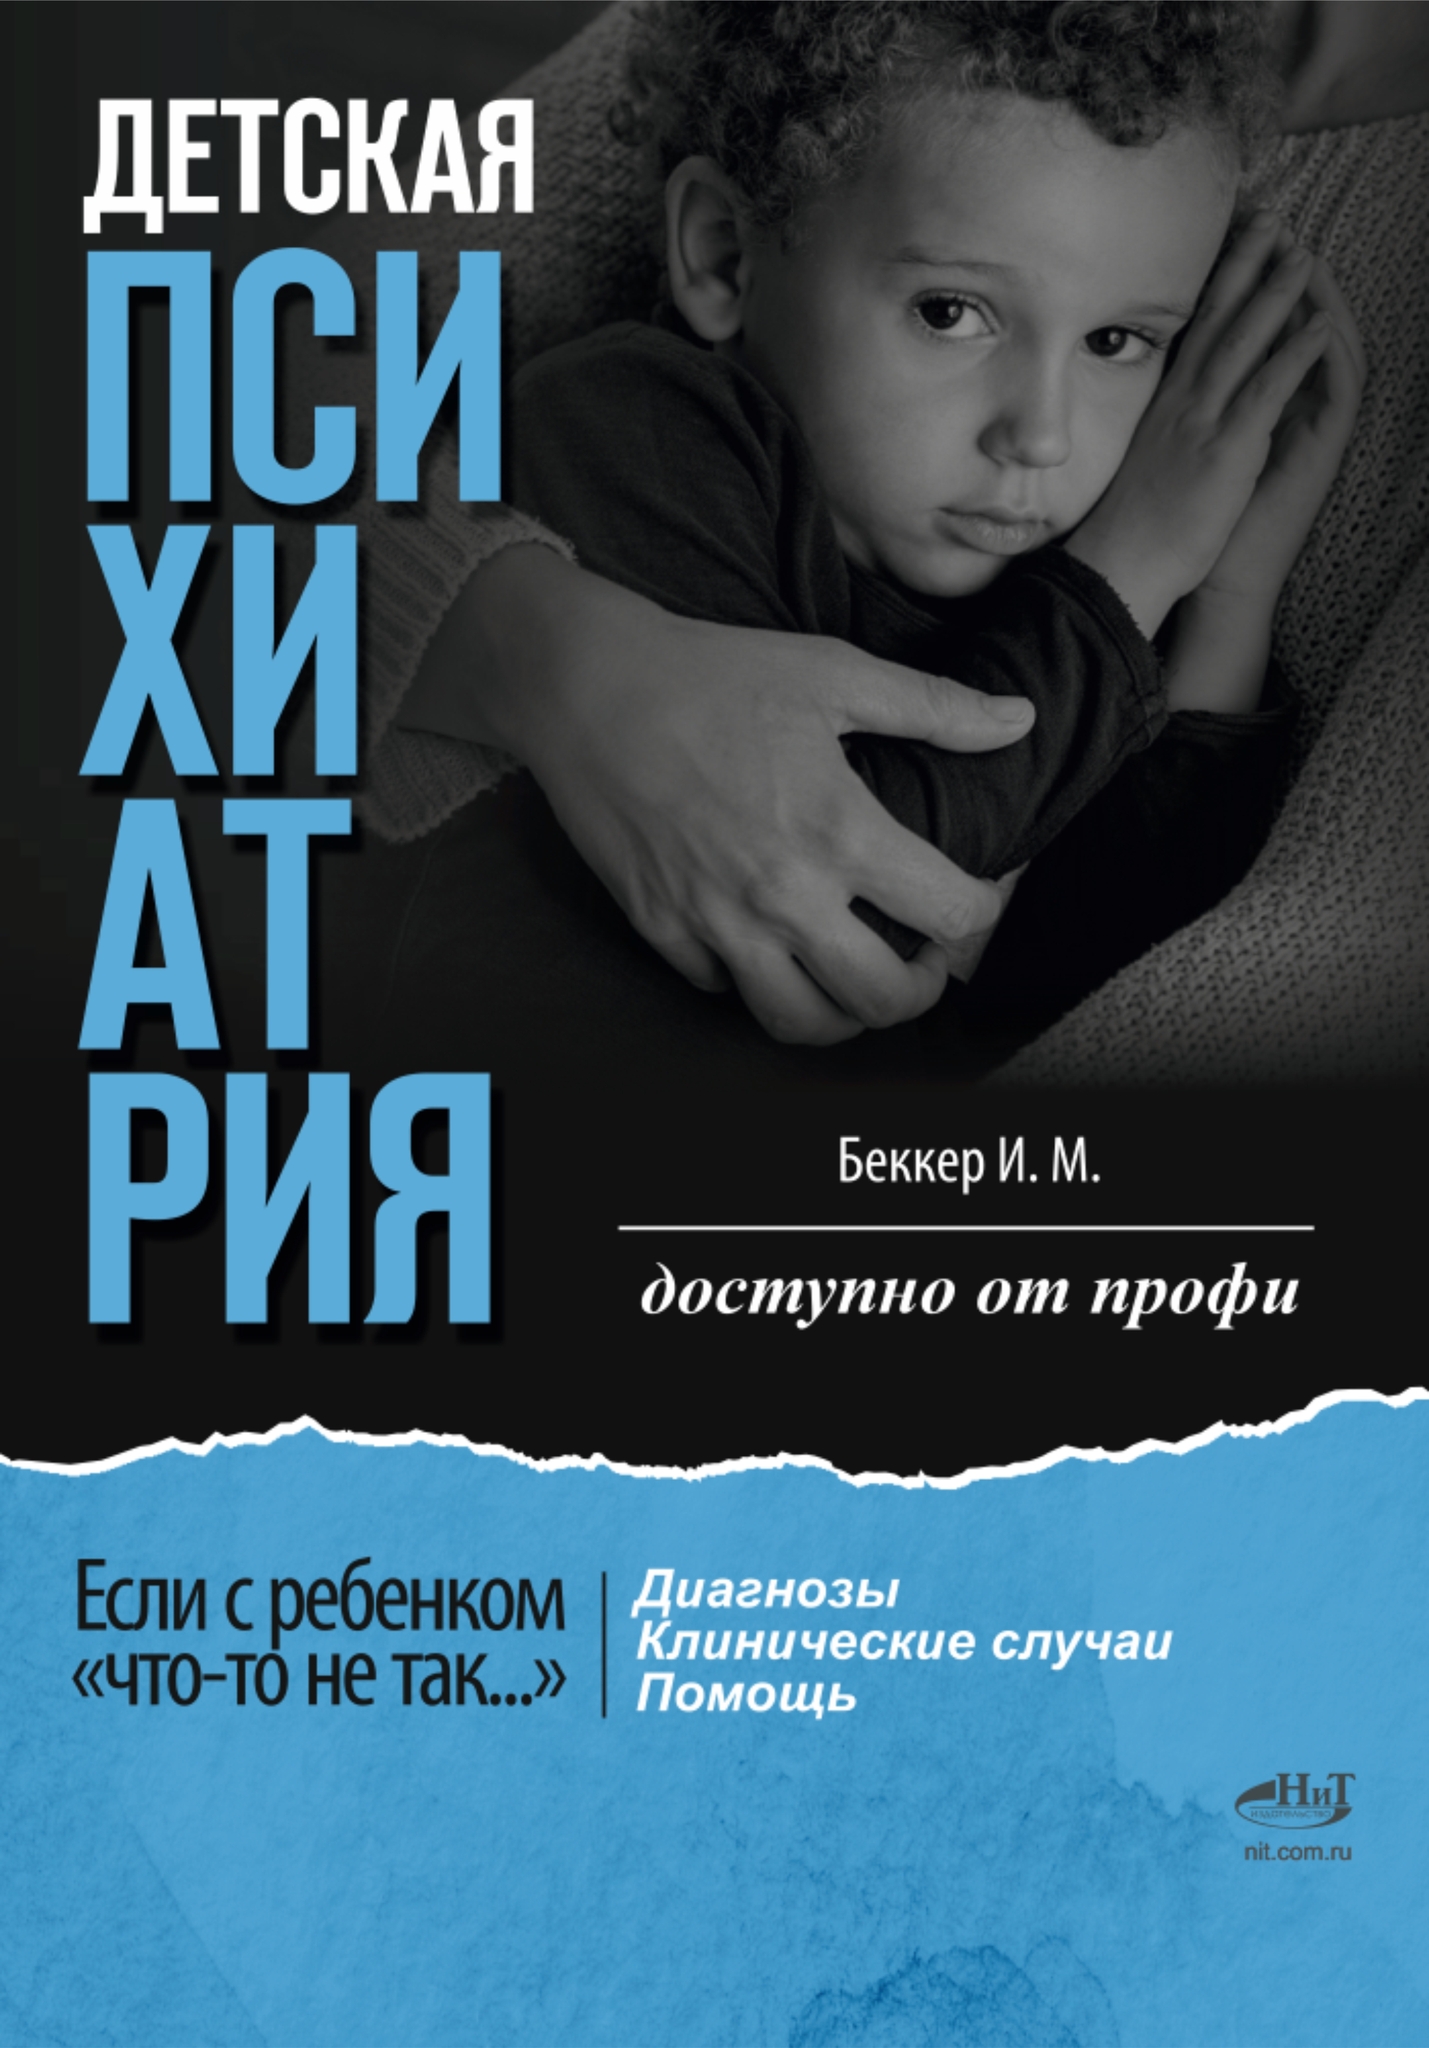 Беккер Исаак Михайлович - Детская психиатрия: Если с ребенком «что-то не так...» Диагнозы. Клинические случаи. Помощь